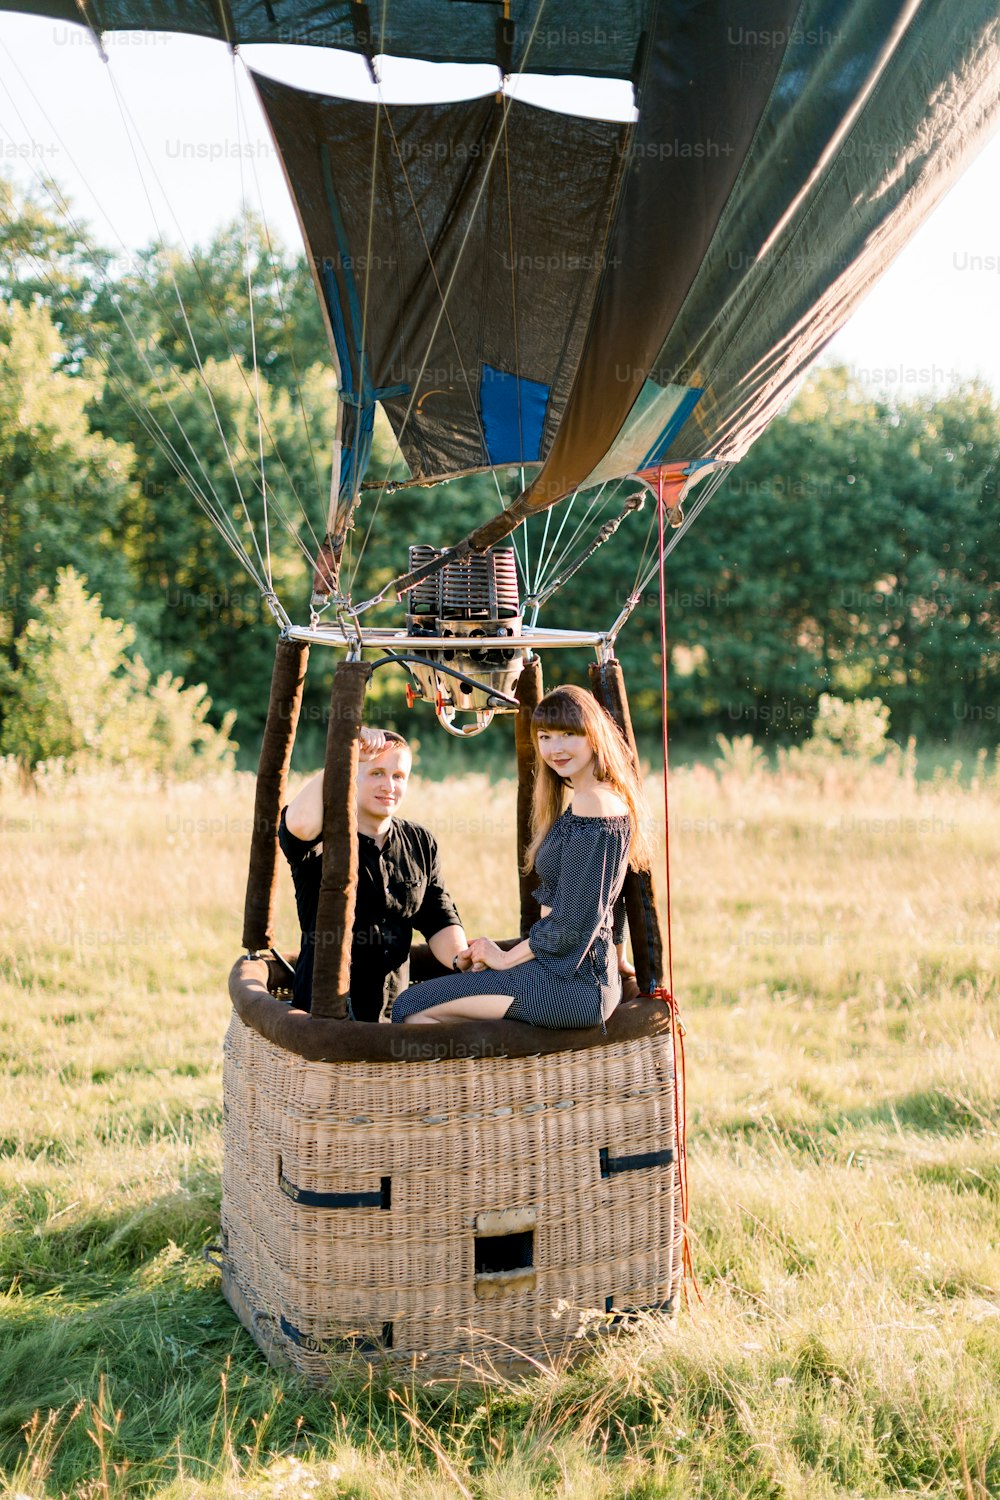 Data romântica, pedido de casamento, noivado, conceito de aniversário de casamento. Casal apaixonado sentado na cesta de balão de ar quente no fundo do campo ensolarado de verão.